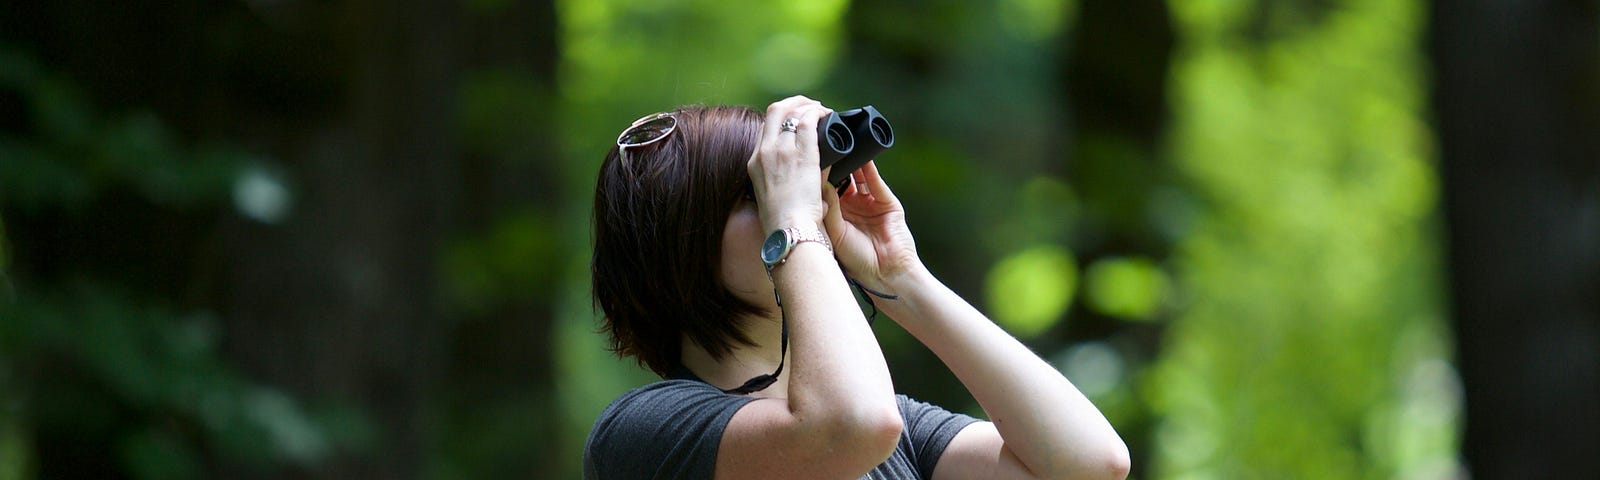 Woman watching smething through binoculars